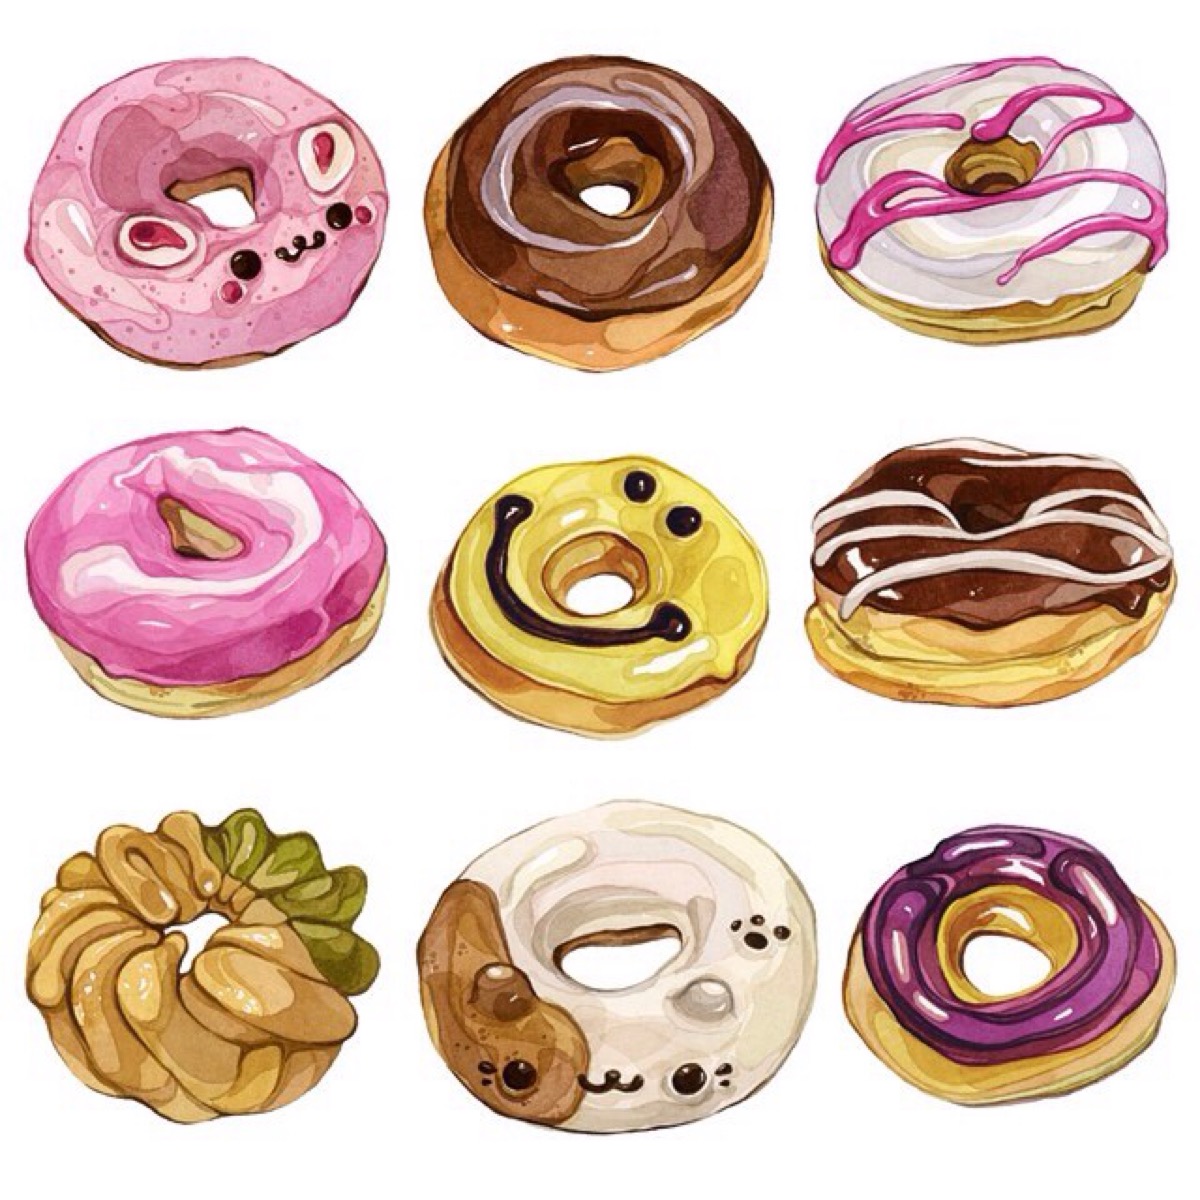 彩色甜甜圈简笔画画法图片步骤💛巧艺网